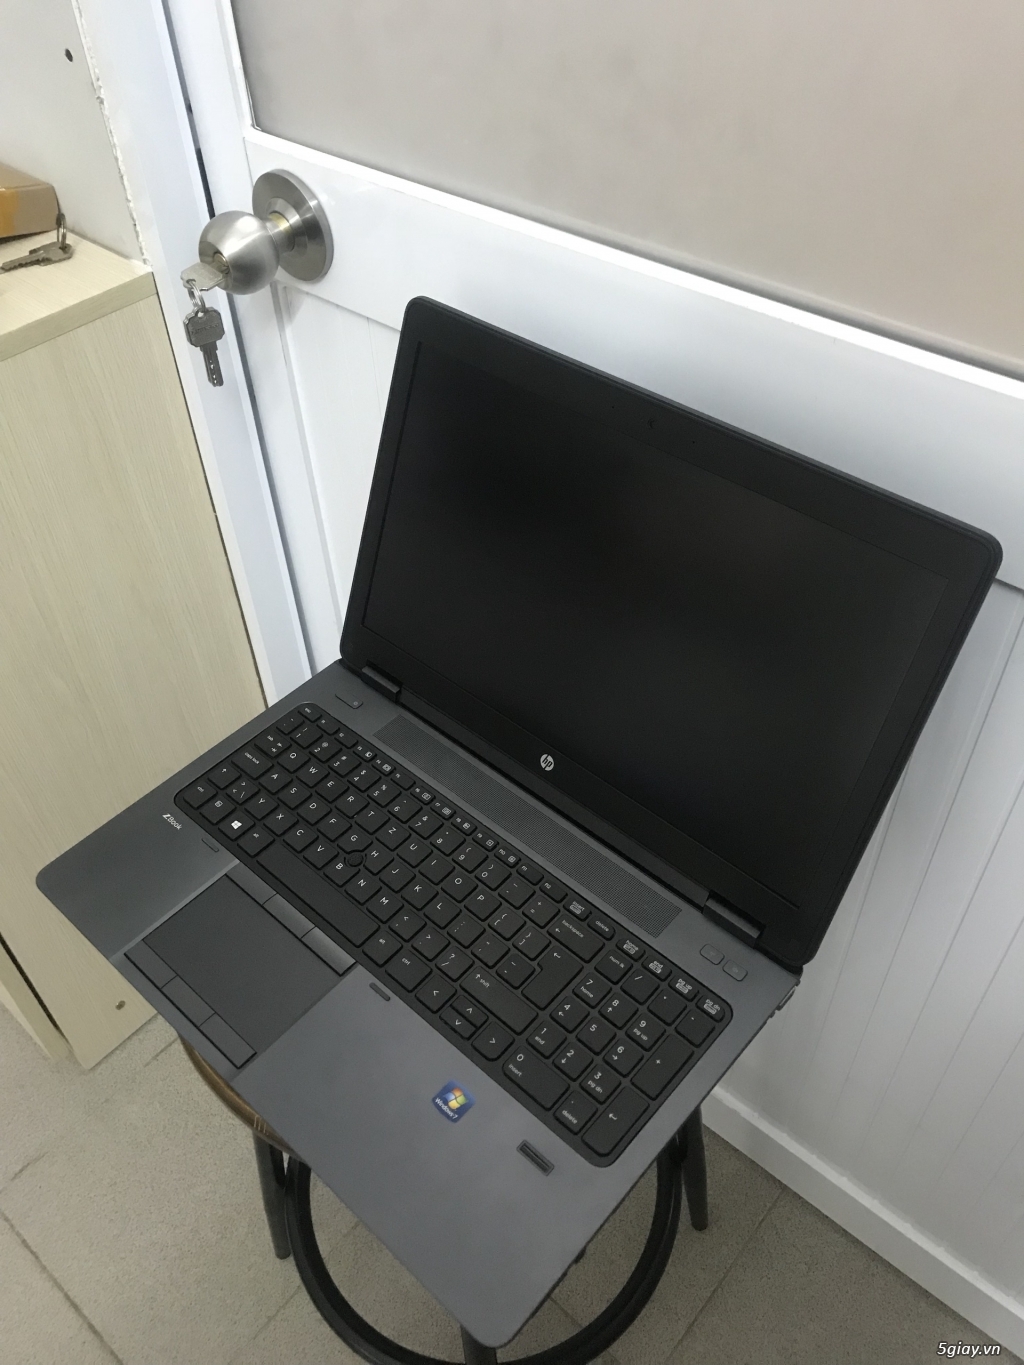 HP ZBook 15 (15.6” IPS FHD, Core i7 4810MQ, 8 GB Ram, 256 GB SSD) - 2